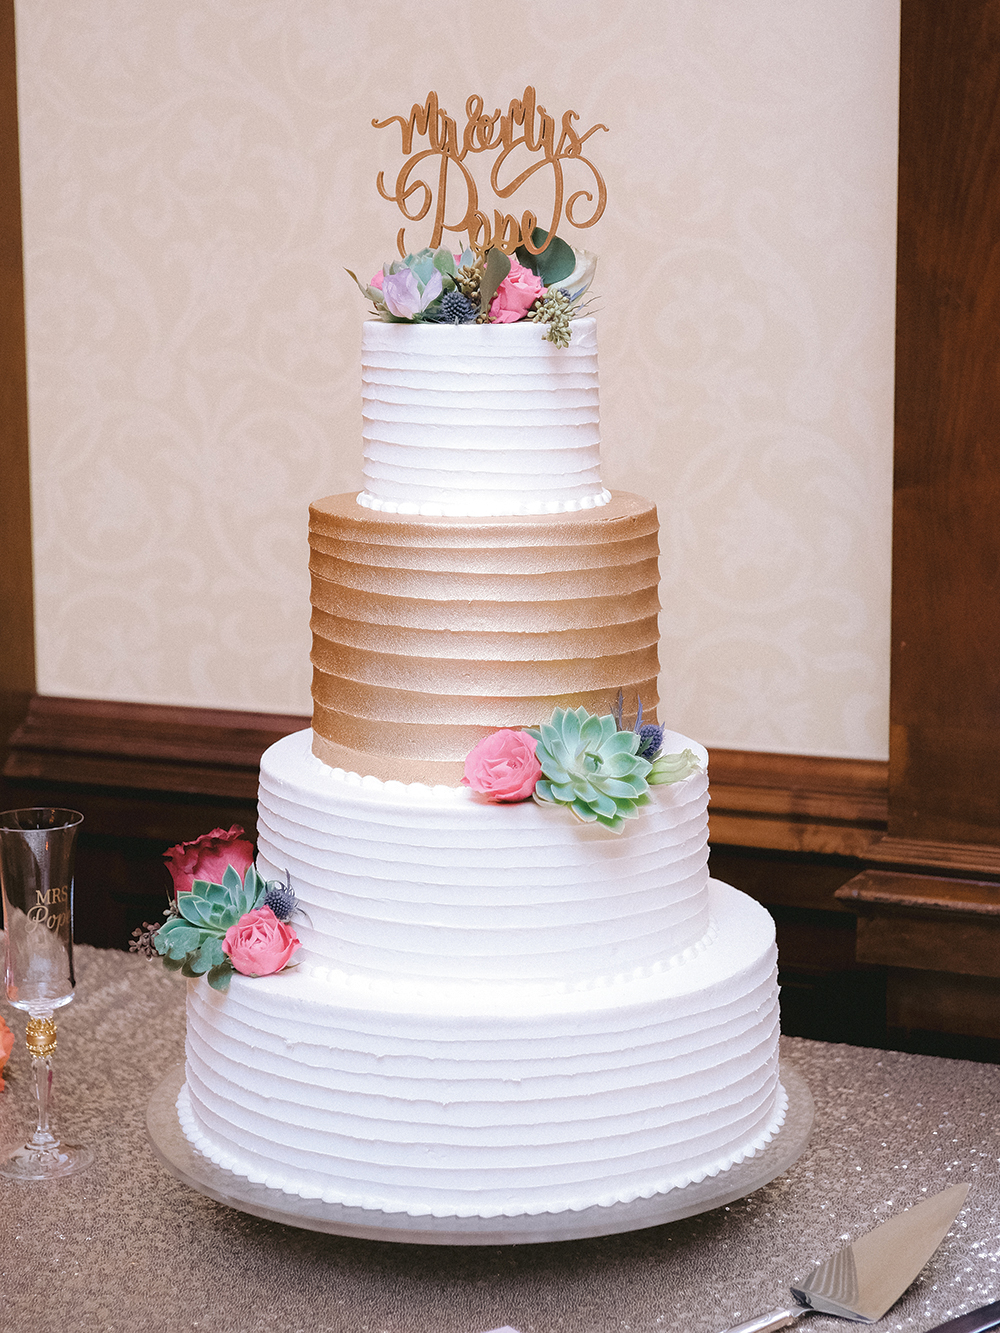 beautiful wedding cake - Susie's cakes